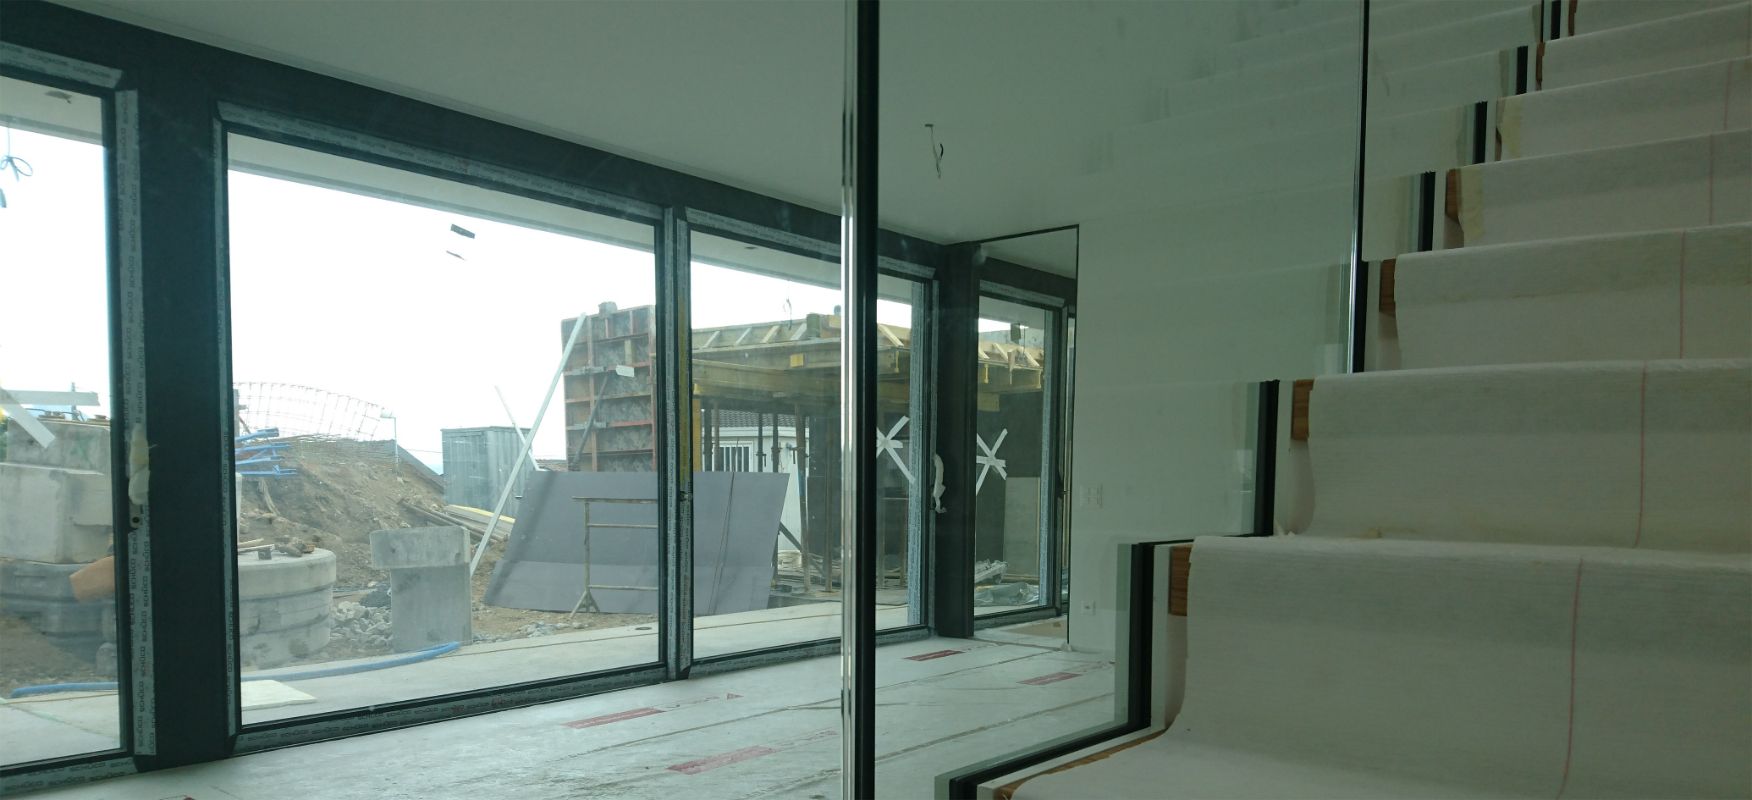 Chantier de construction, grande fenêtre et escalier intérieur.